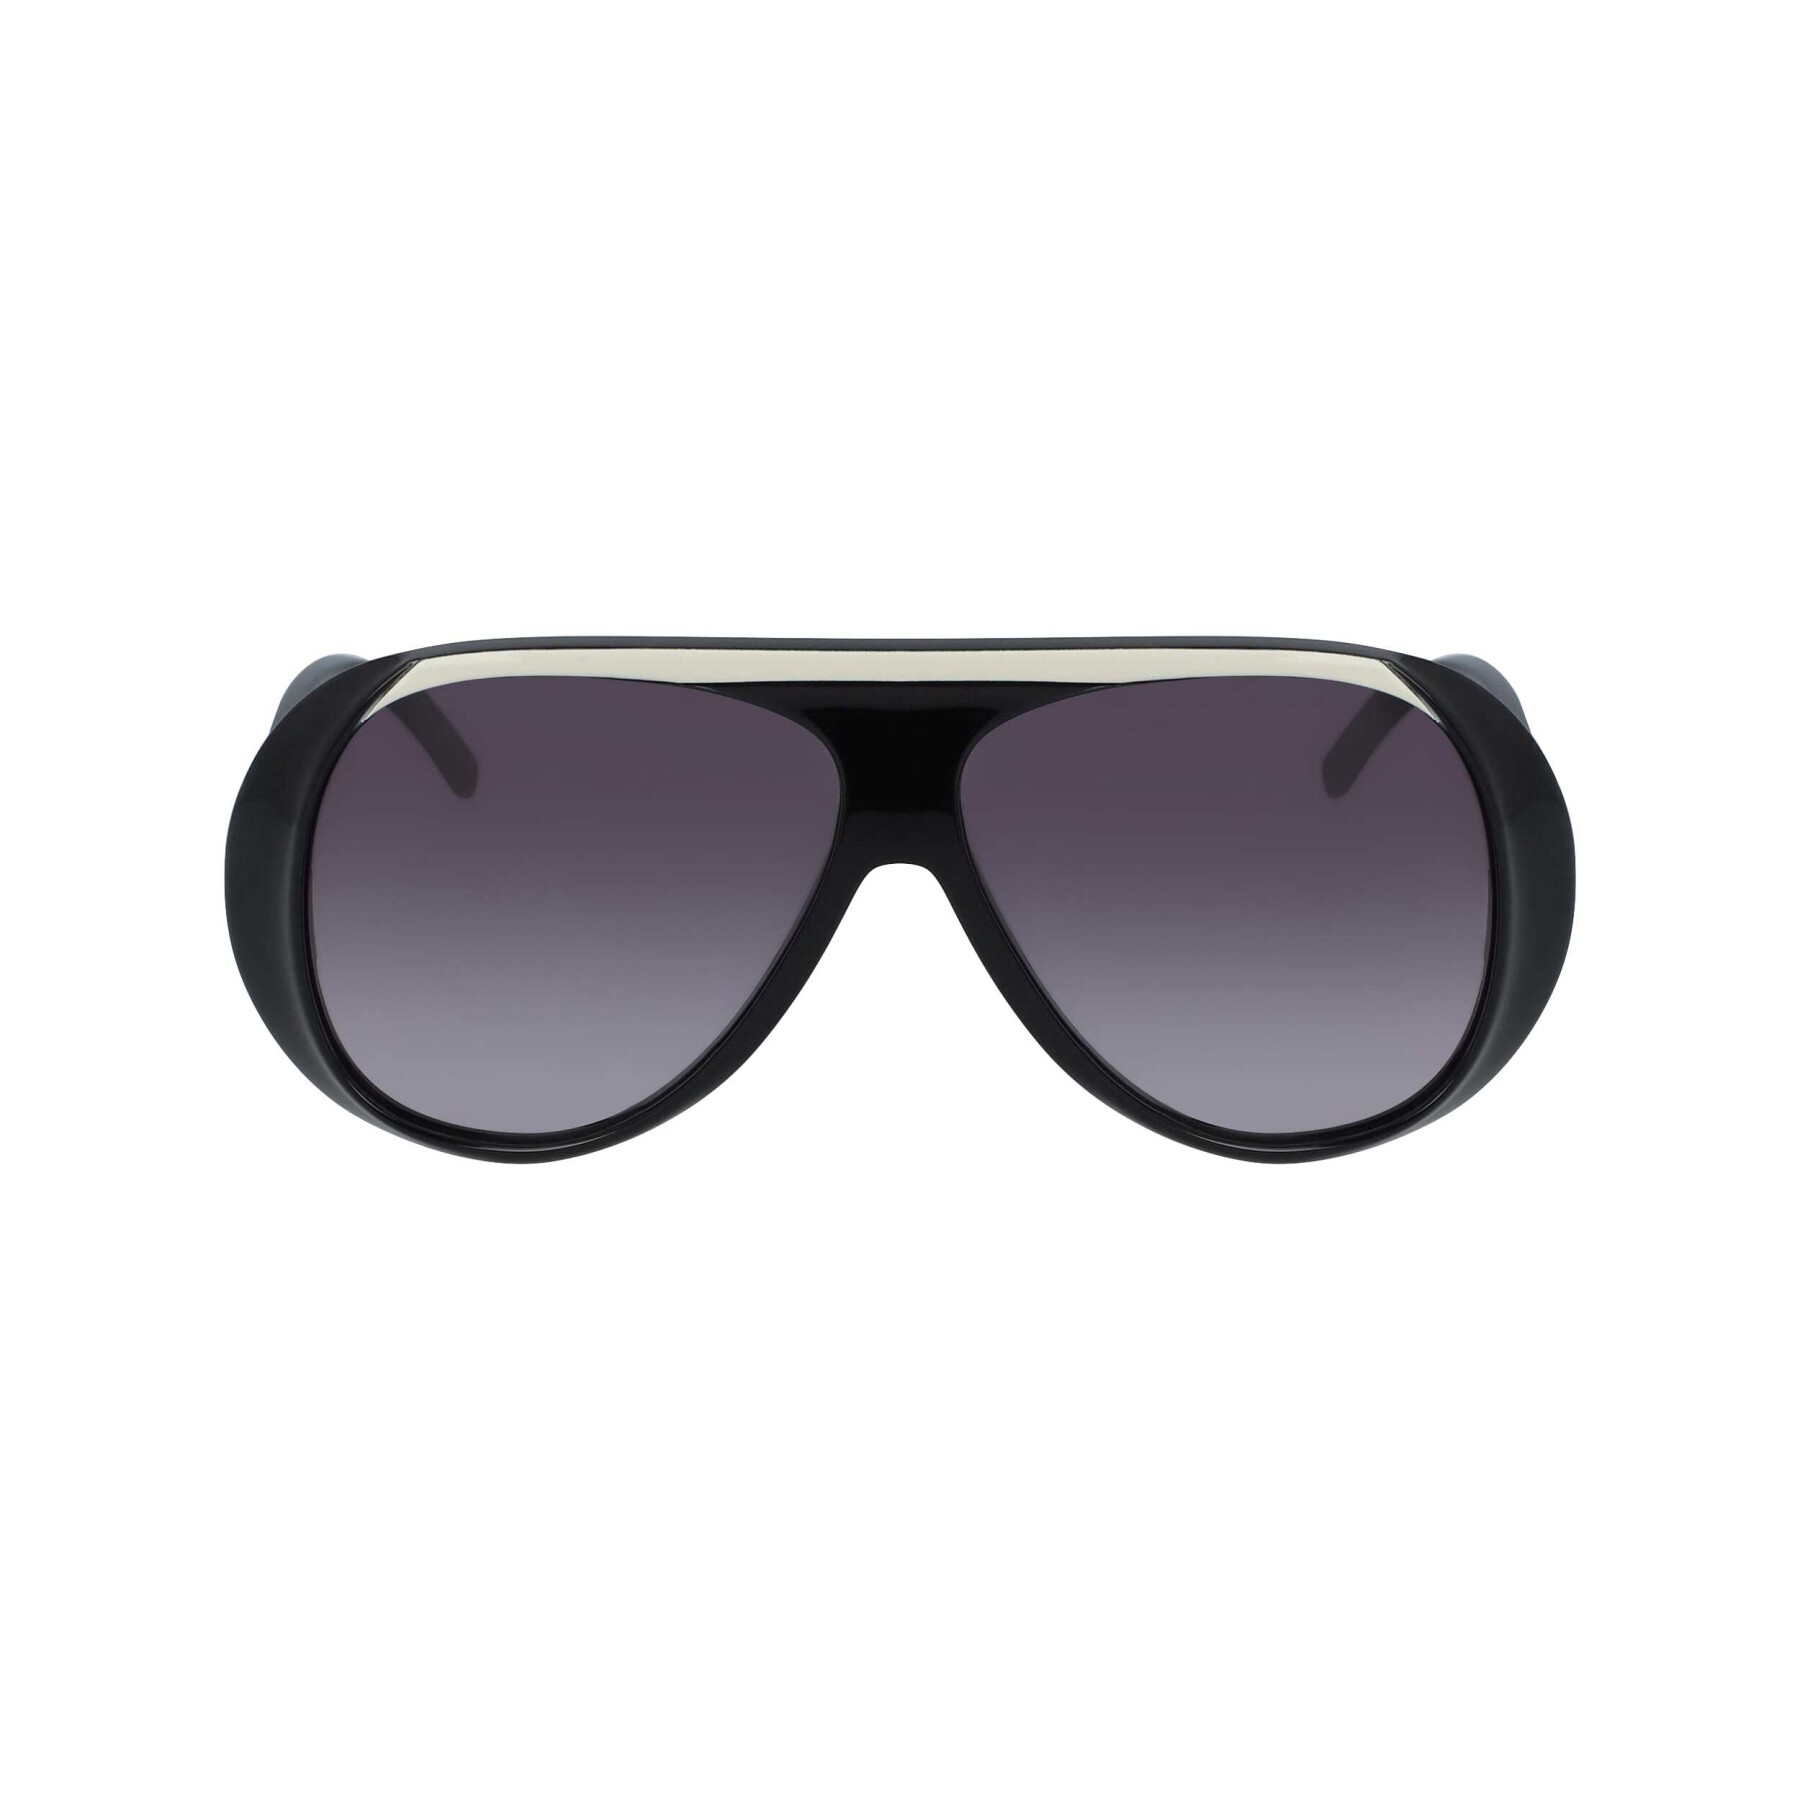 Women's sunglasses Longchamp LO664S-001